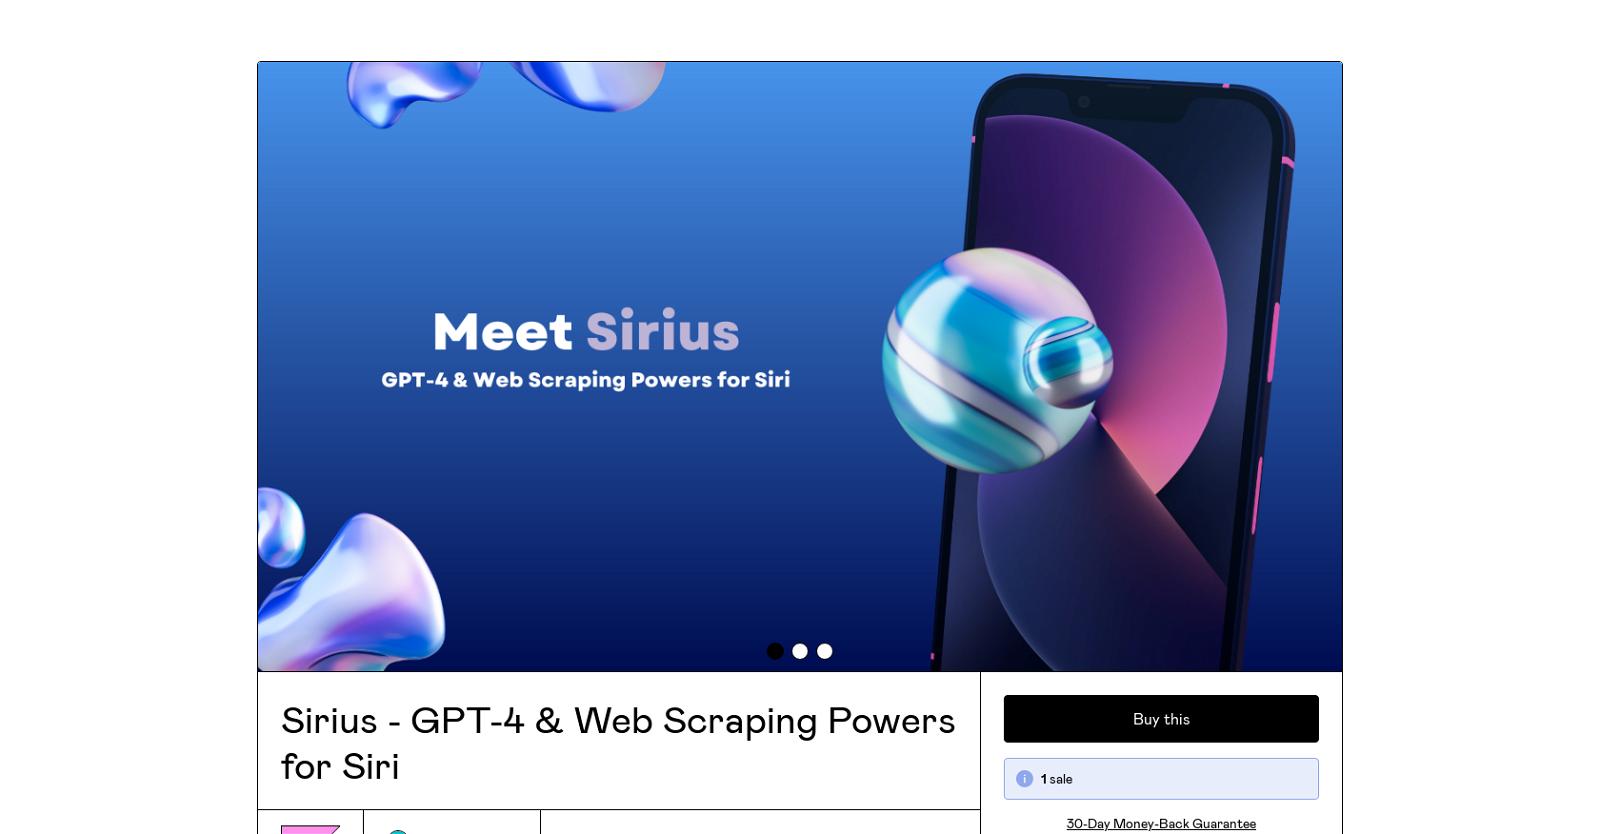 Sirius website